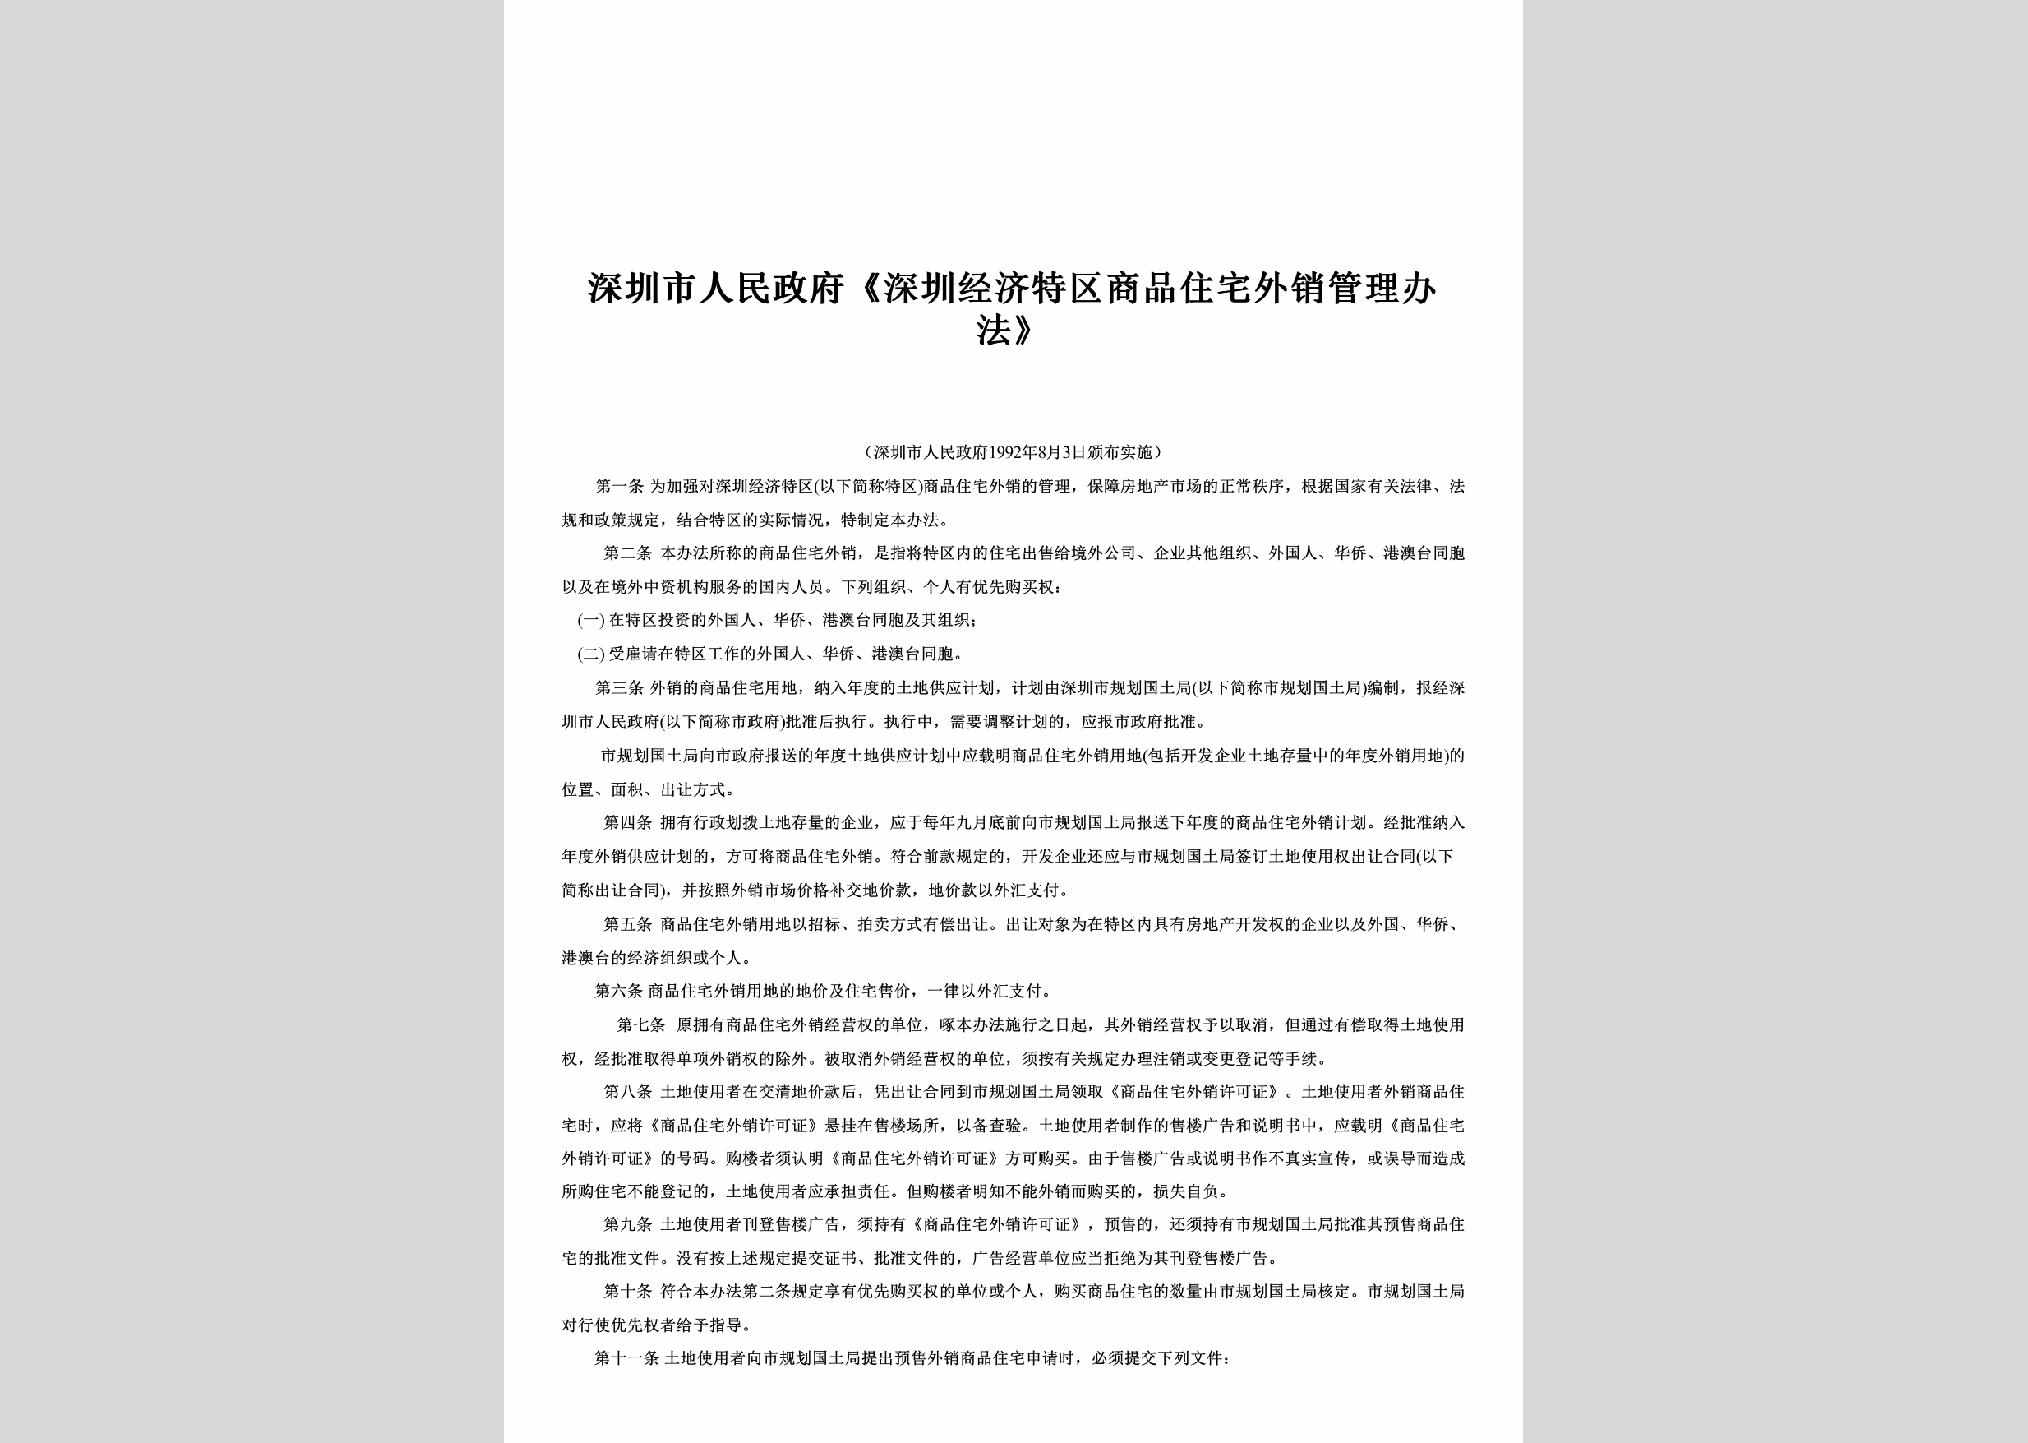 GD-TQZZGLBF-1992：《深圳经济特区商品住宅外销管理办法》